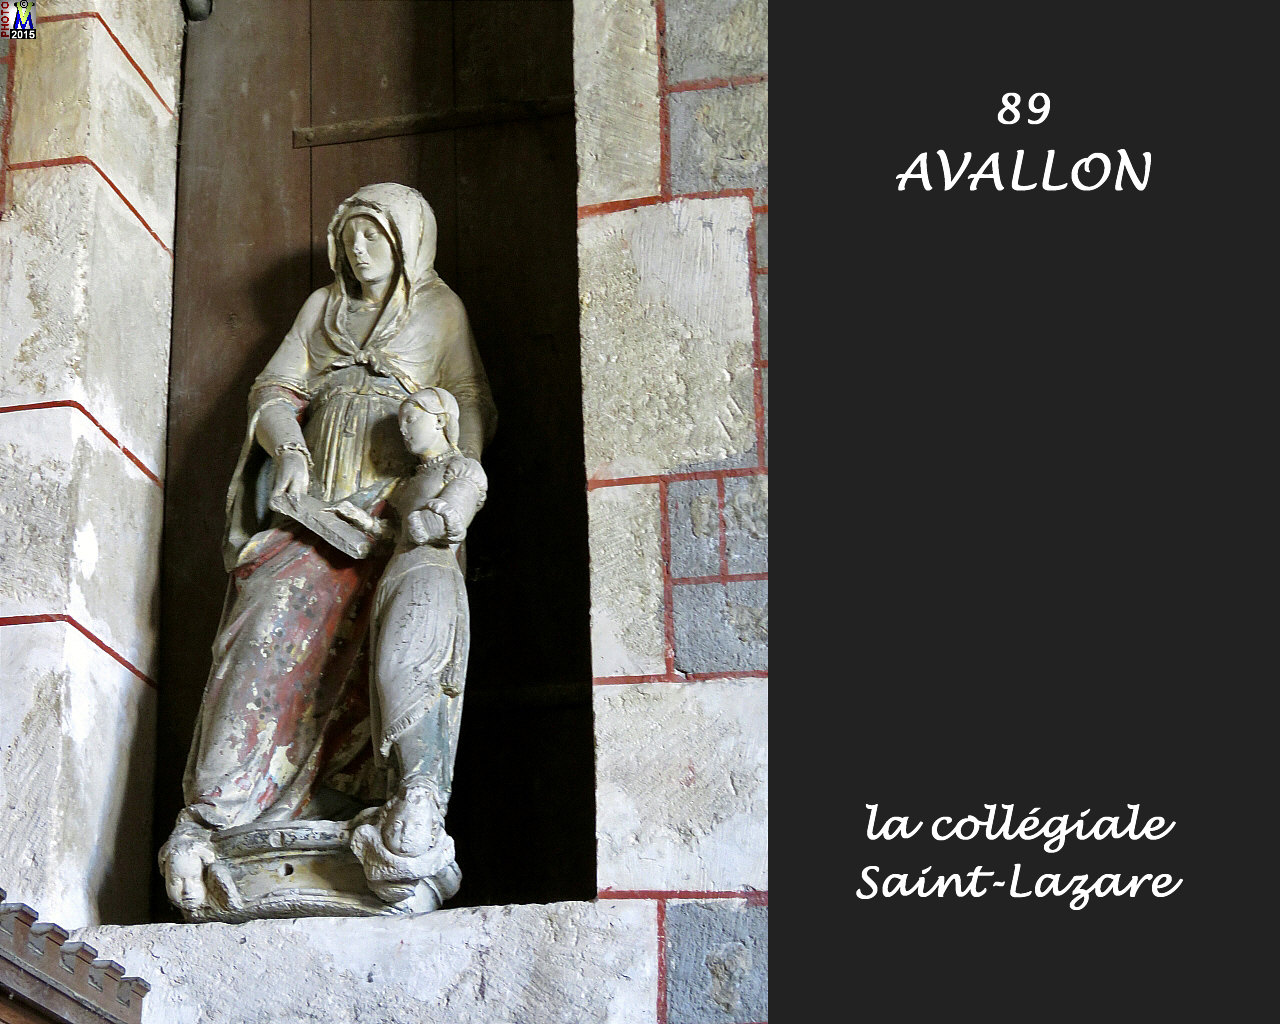 89AVALLON-collegiale_260.jpg